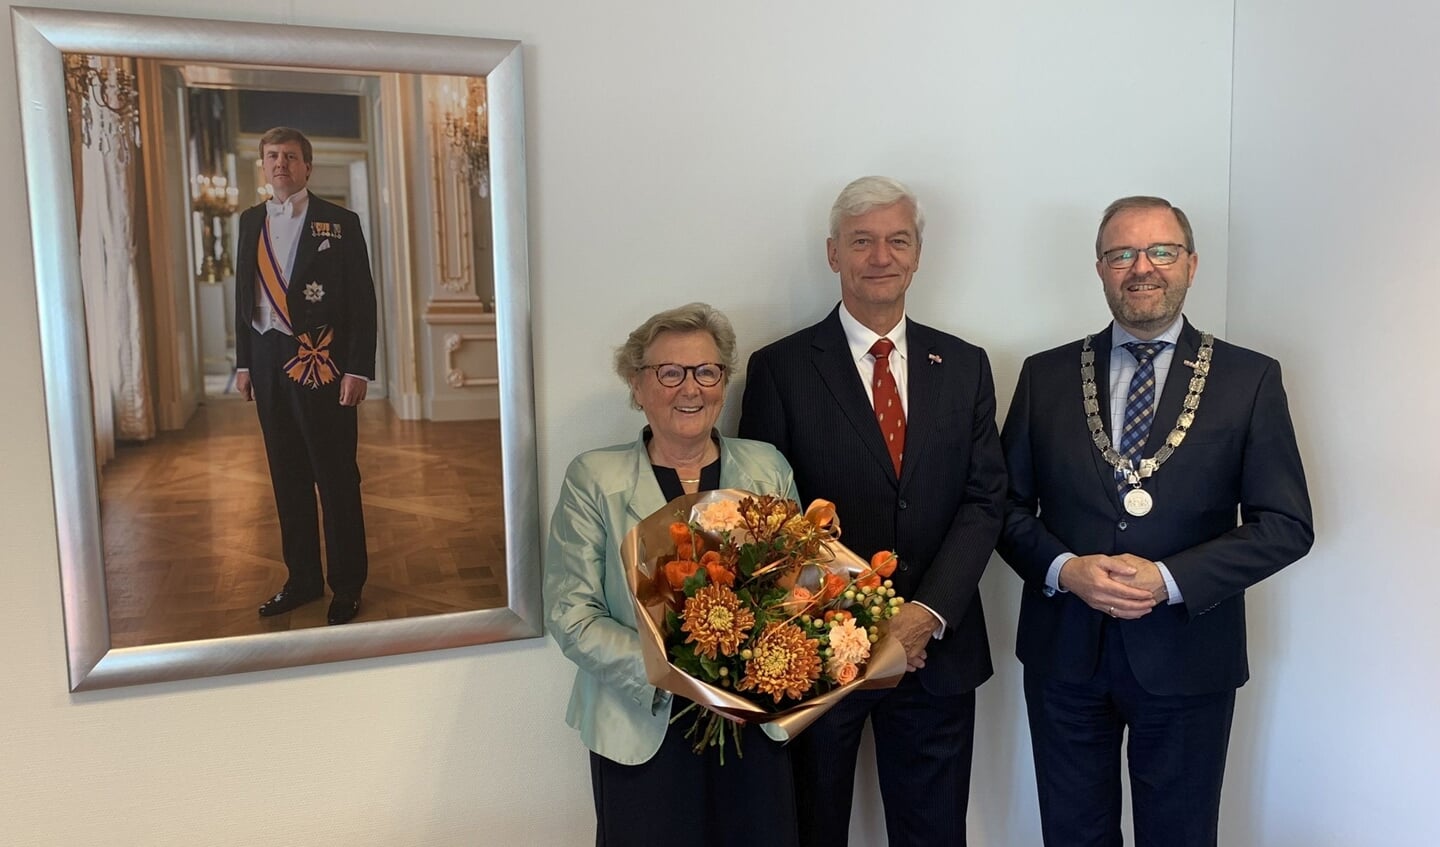 Burgemeester Servaas Stoop ontving vrijdag 30 september de heer Hofstee en zijn vrouw in het gemeentehuis voor een felicitatiemoment.